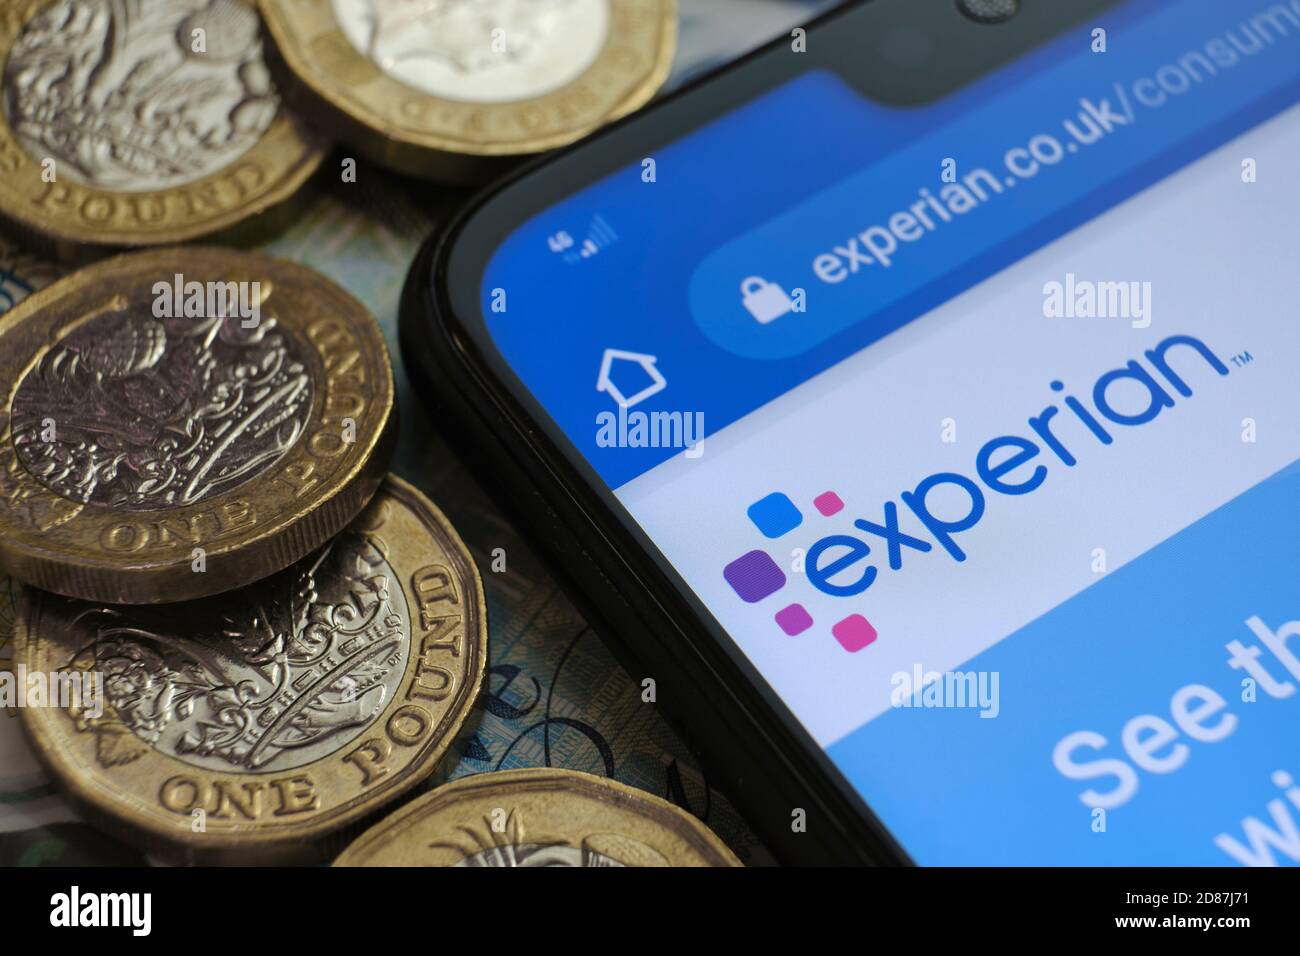 Experian Credit Check Agentur Logo auf der Webseite auf der Ecke des Smartphones in der Nähe von Pfund-Münzen platziert gesehen. Selektiver Fokus. Stockfoto